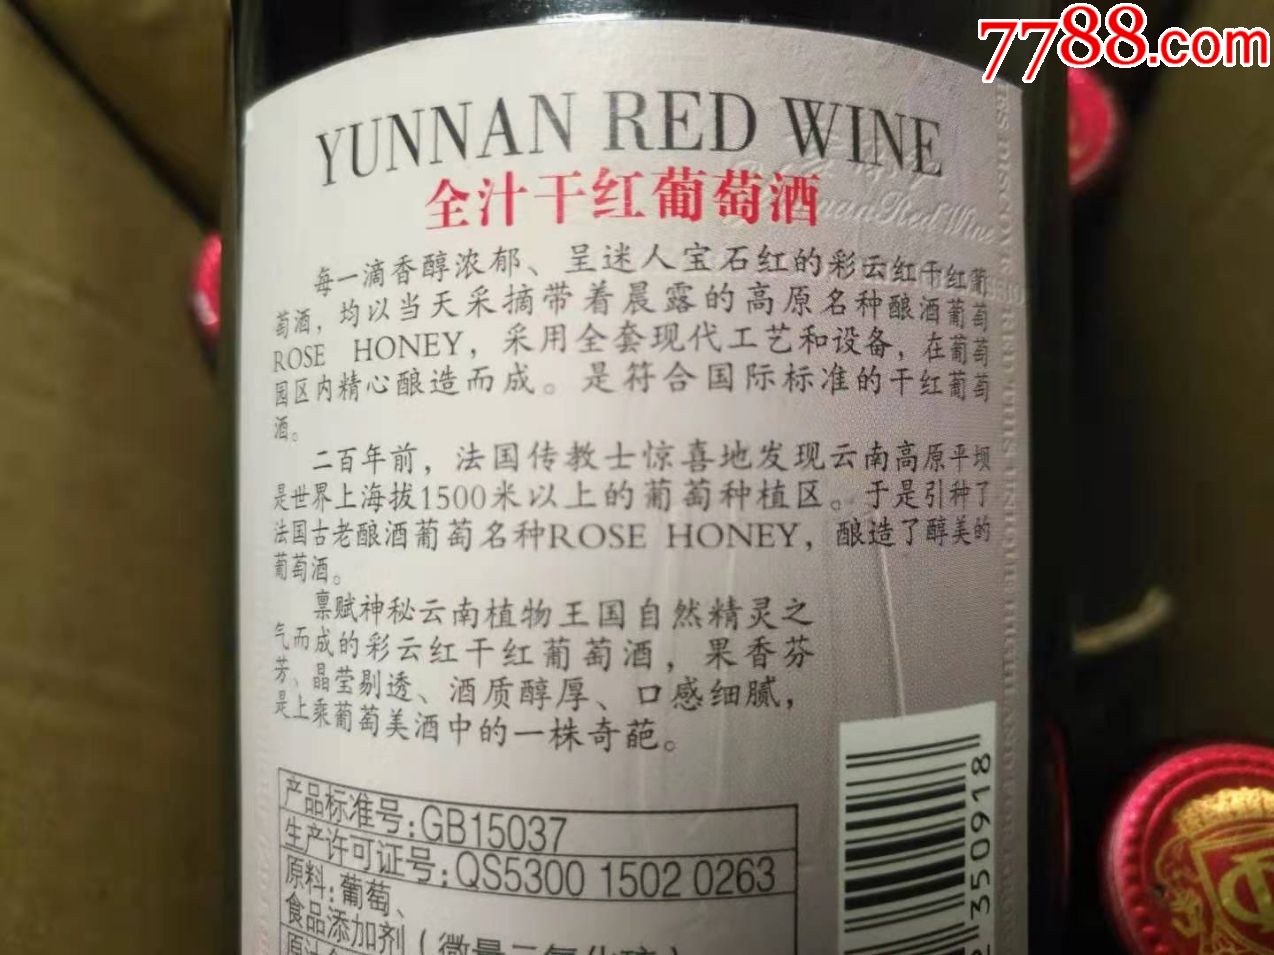 2013年云南红全汁干红葡萄酒一件6瓶